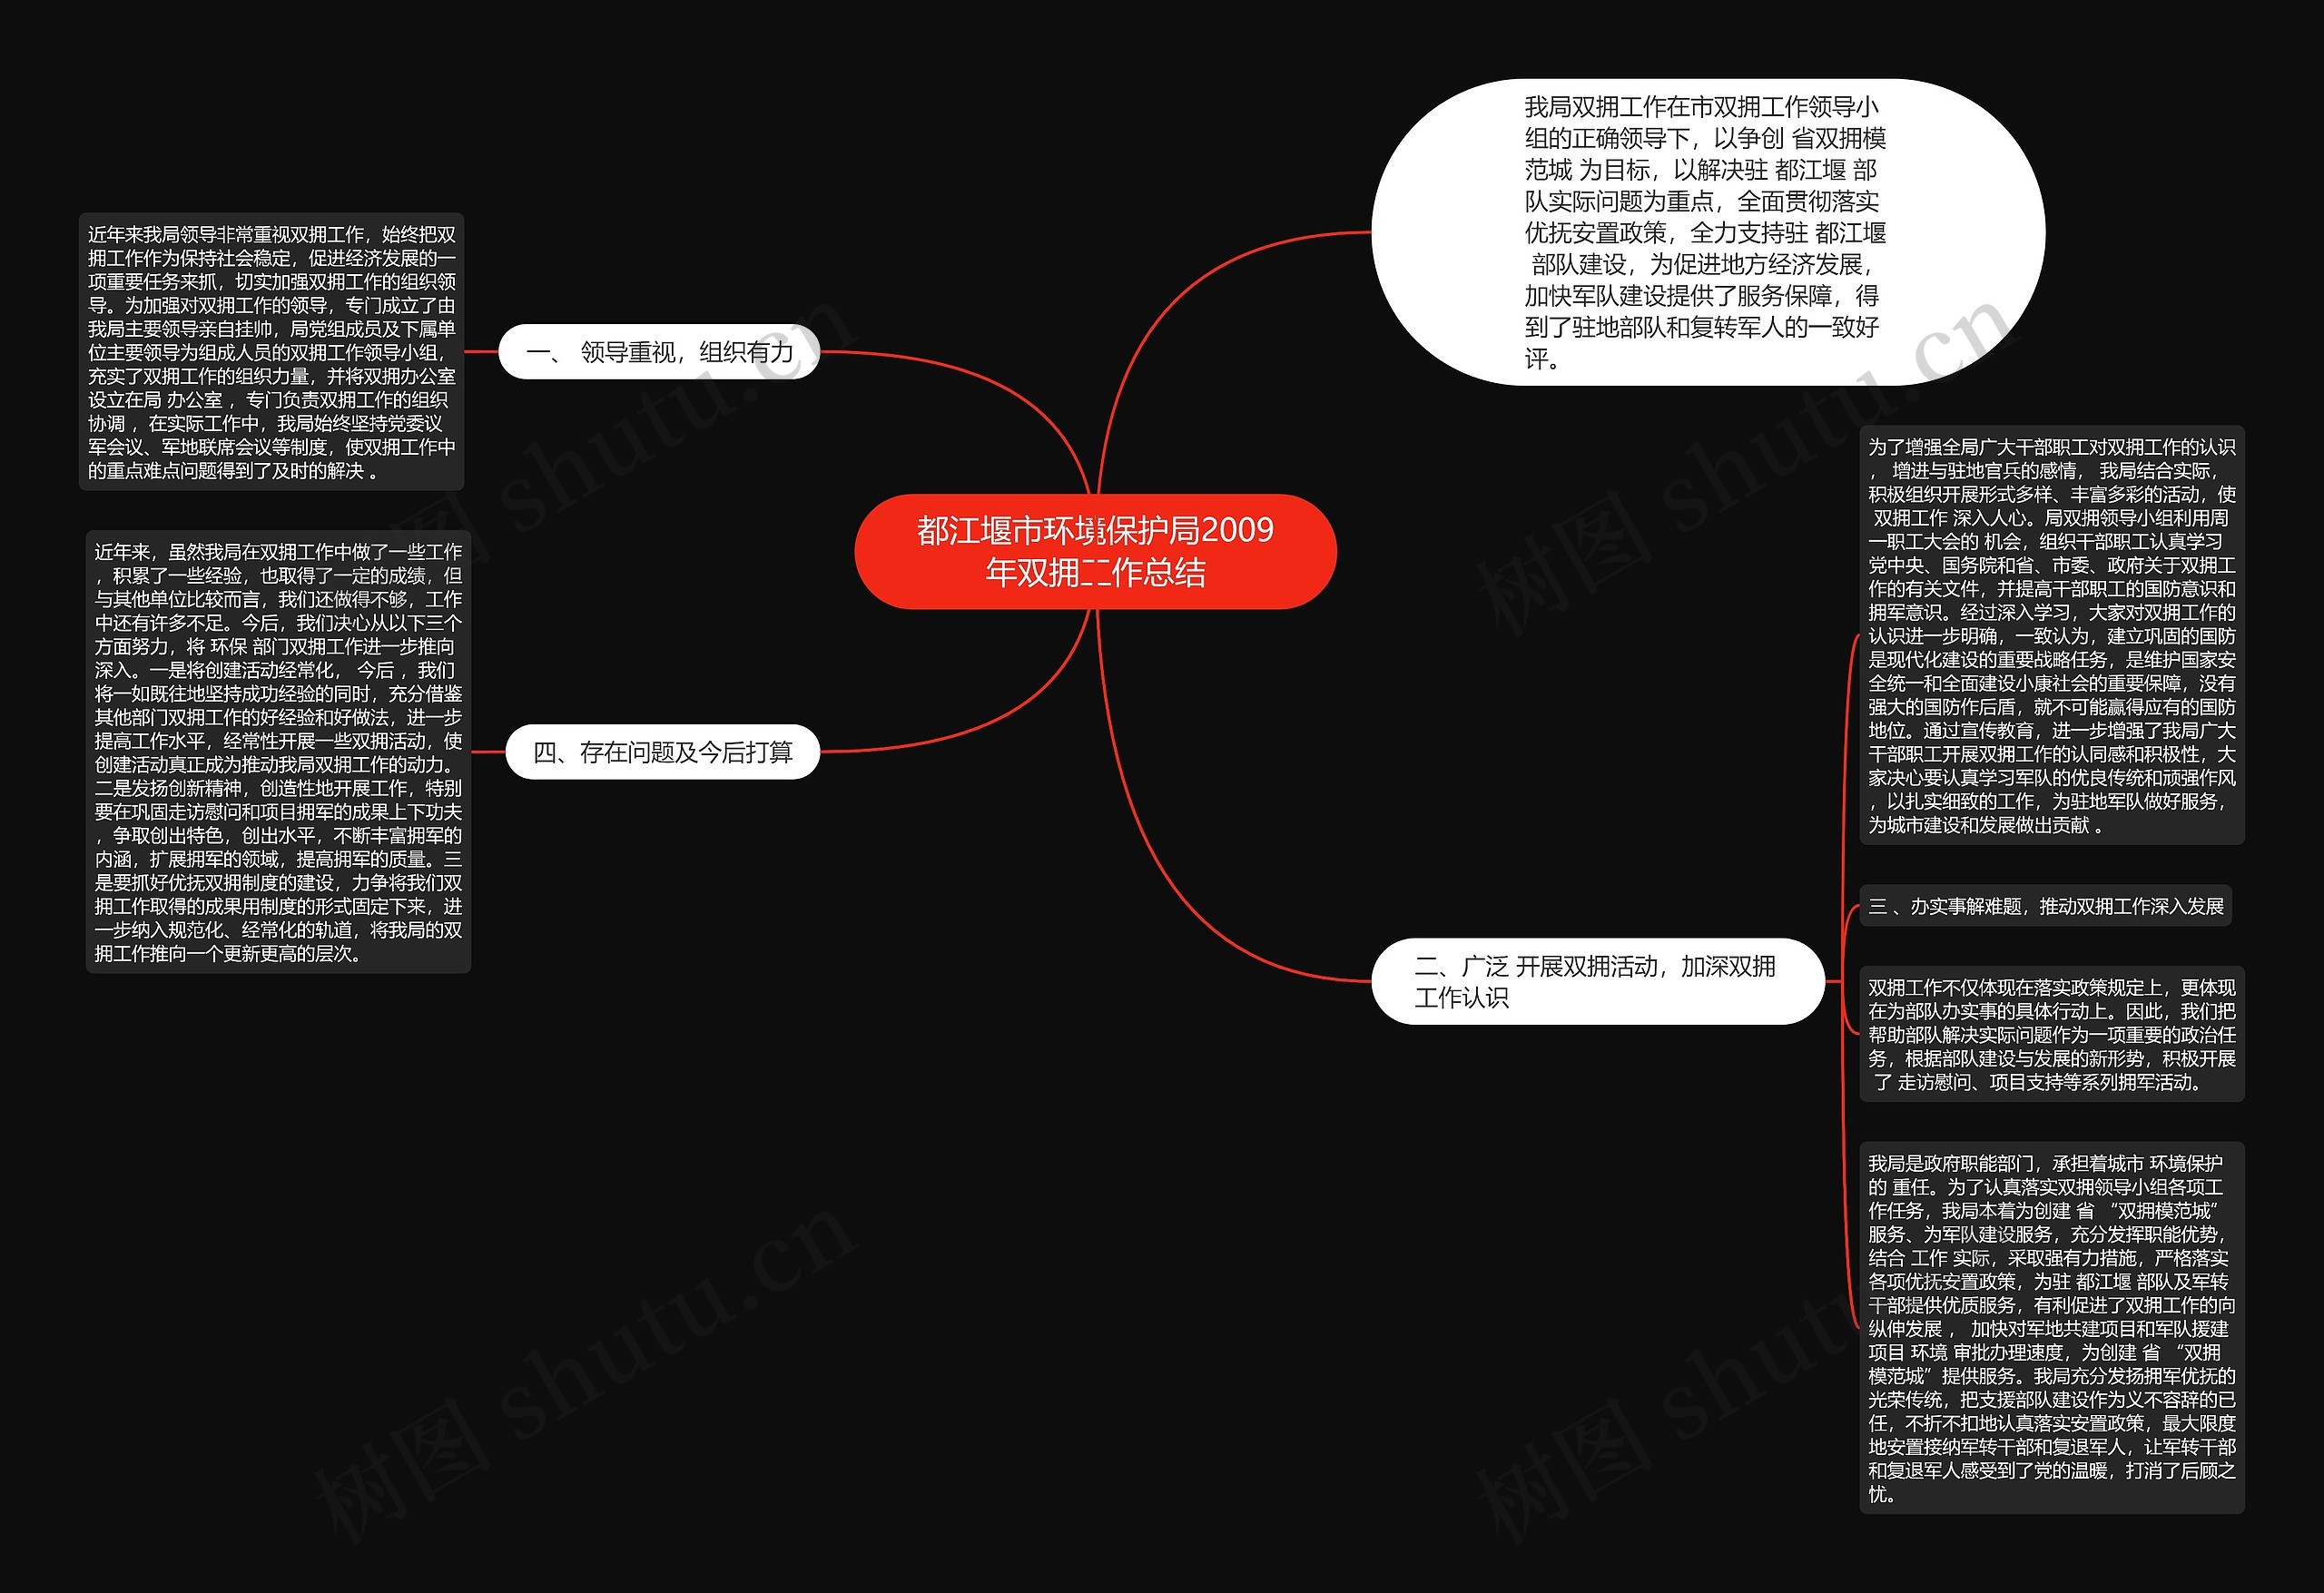 都江堰市环境保护局2009年双拥工作总结思维导图